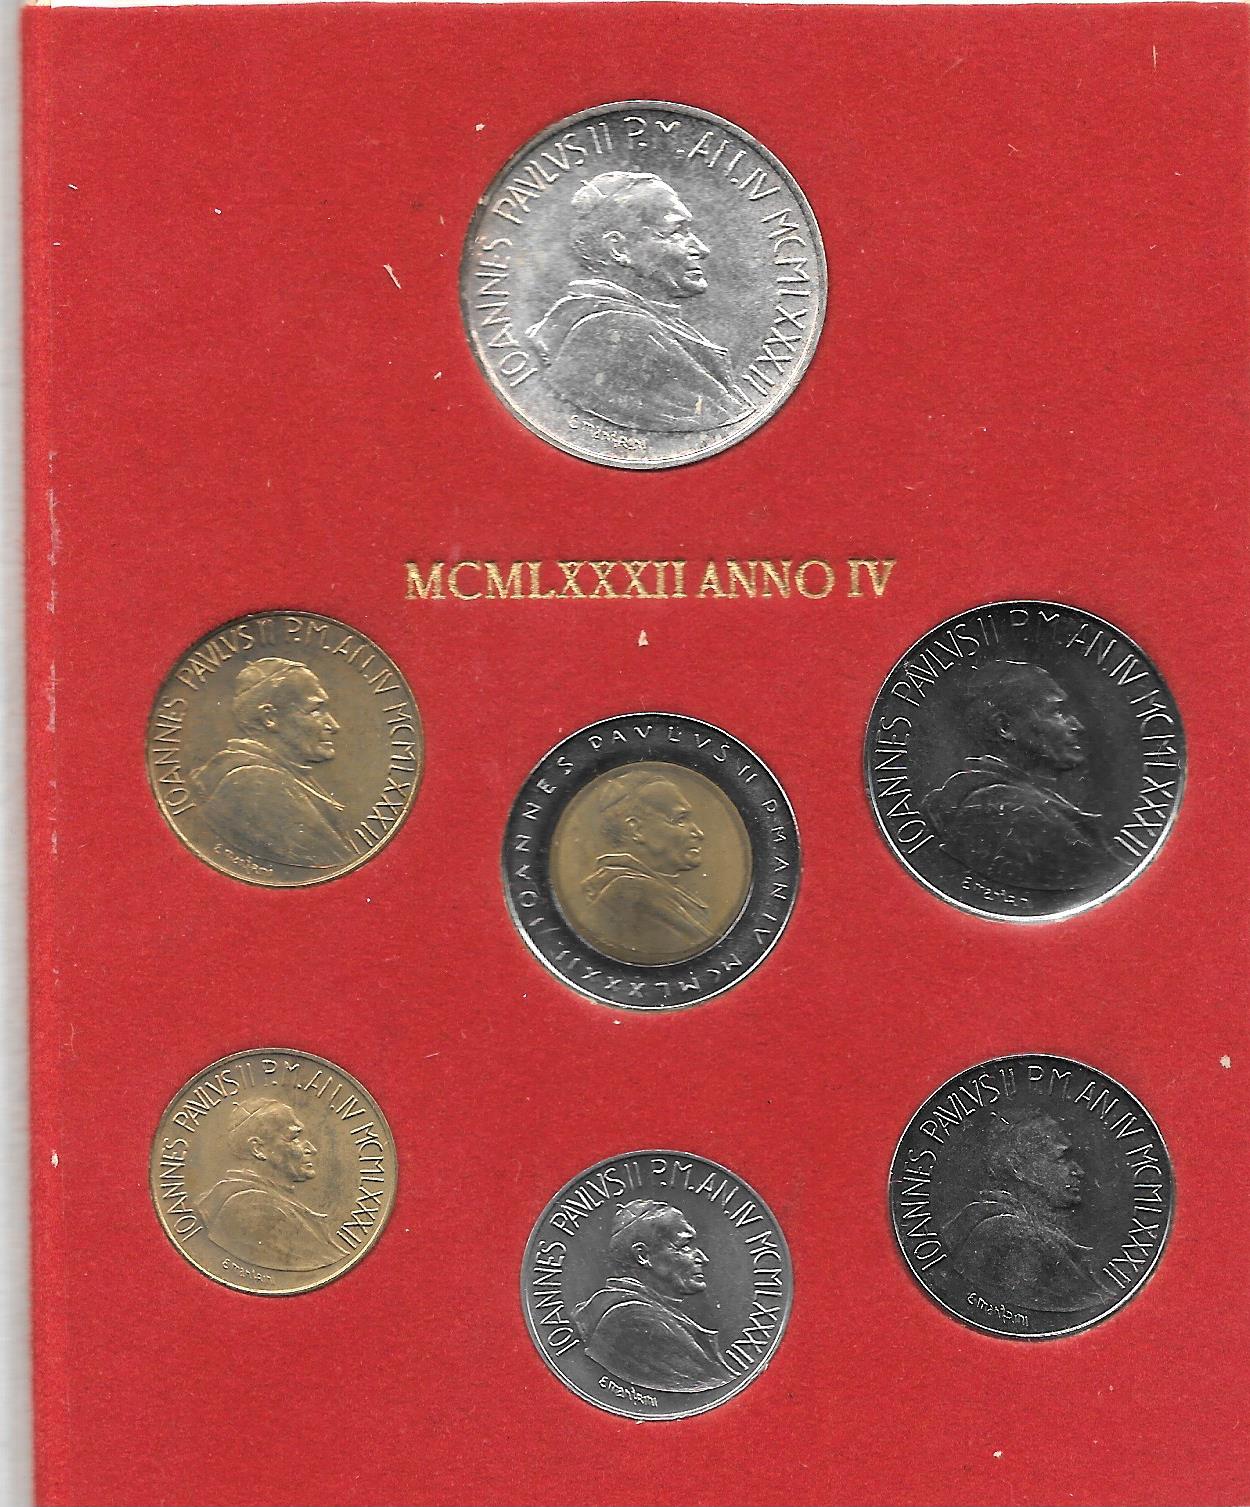 Serie completa di 7 monete "Giovanni Paolo II - anno 4 "